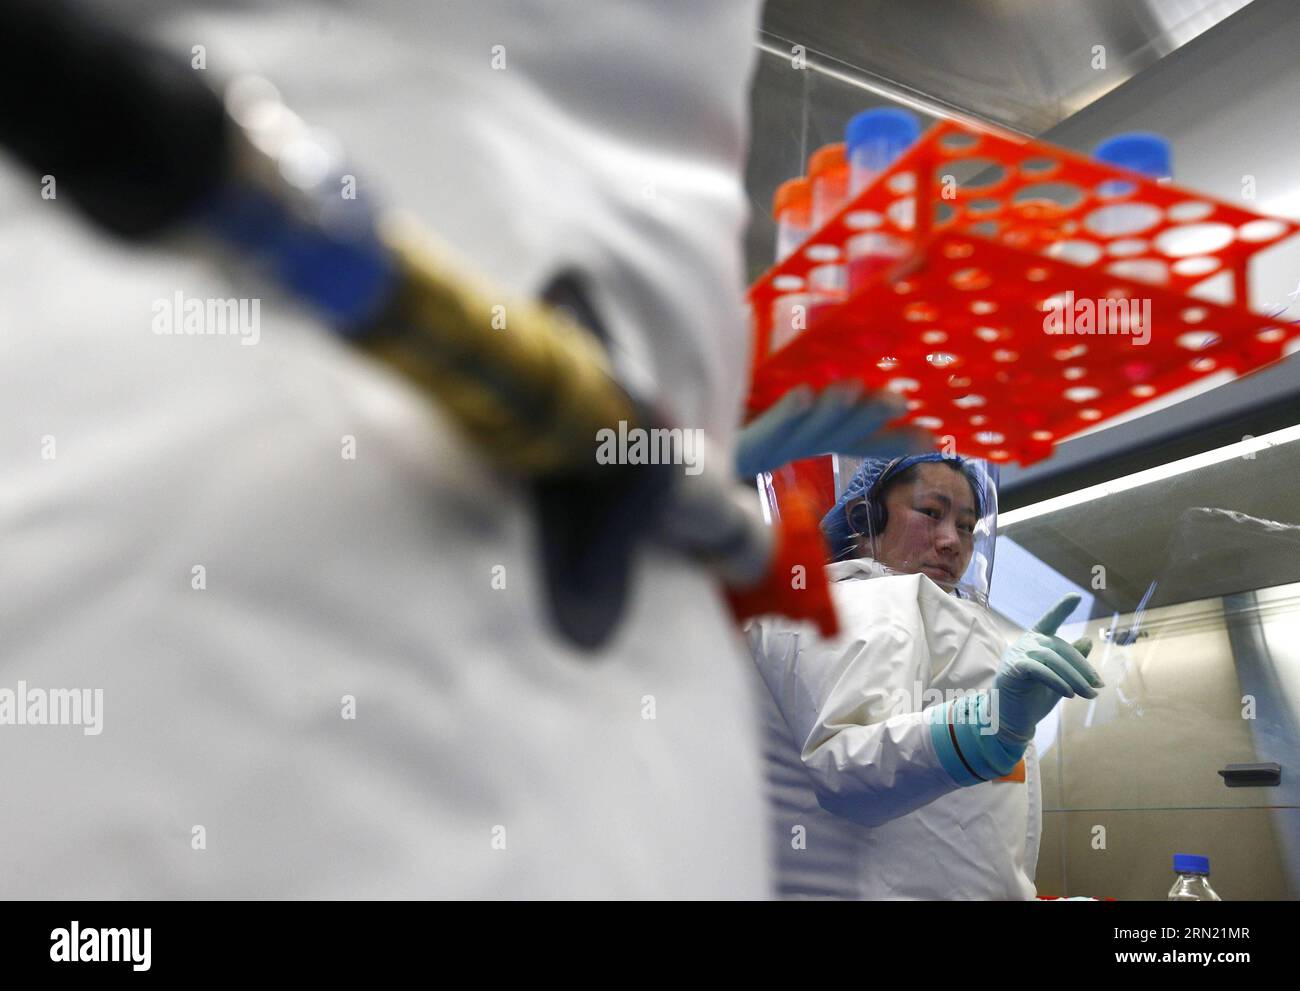 150131 -- WUHAN, Ein Forscher, nimmt an einer Übung im neu abgeschlossenen Labor in Wuhan, Hauptstadt der zentralchinesischen Provinz Hubei, am 30. Januar 2015 Teil. Nach mehr als einem Jahrzehnt Bauzeit hat China sein erstes hochrangiges Biosicherheitslabor in Wuhan am Samstag in Wuhan fertiggestellt. Das Labor wird für die Untersuchung der Klasse vier Pathogene P4 verwendet, die sich auf die virulentesten Viren beziehen, die ein hohes Risiko für Aerosol-übertragene Personen-zu-Personen-Infektionen darstellen. wyo CHINA-WUHAN-BIOSICHERHEITSLABOR CN YinxGang PUBLICATIONxNOTxINxCHN Stockfoto